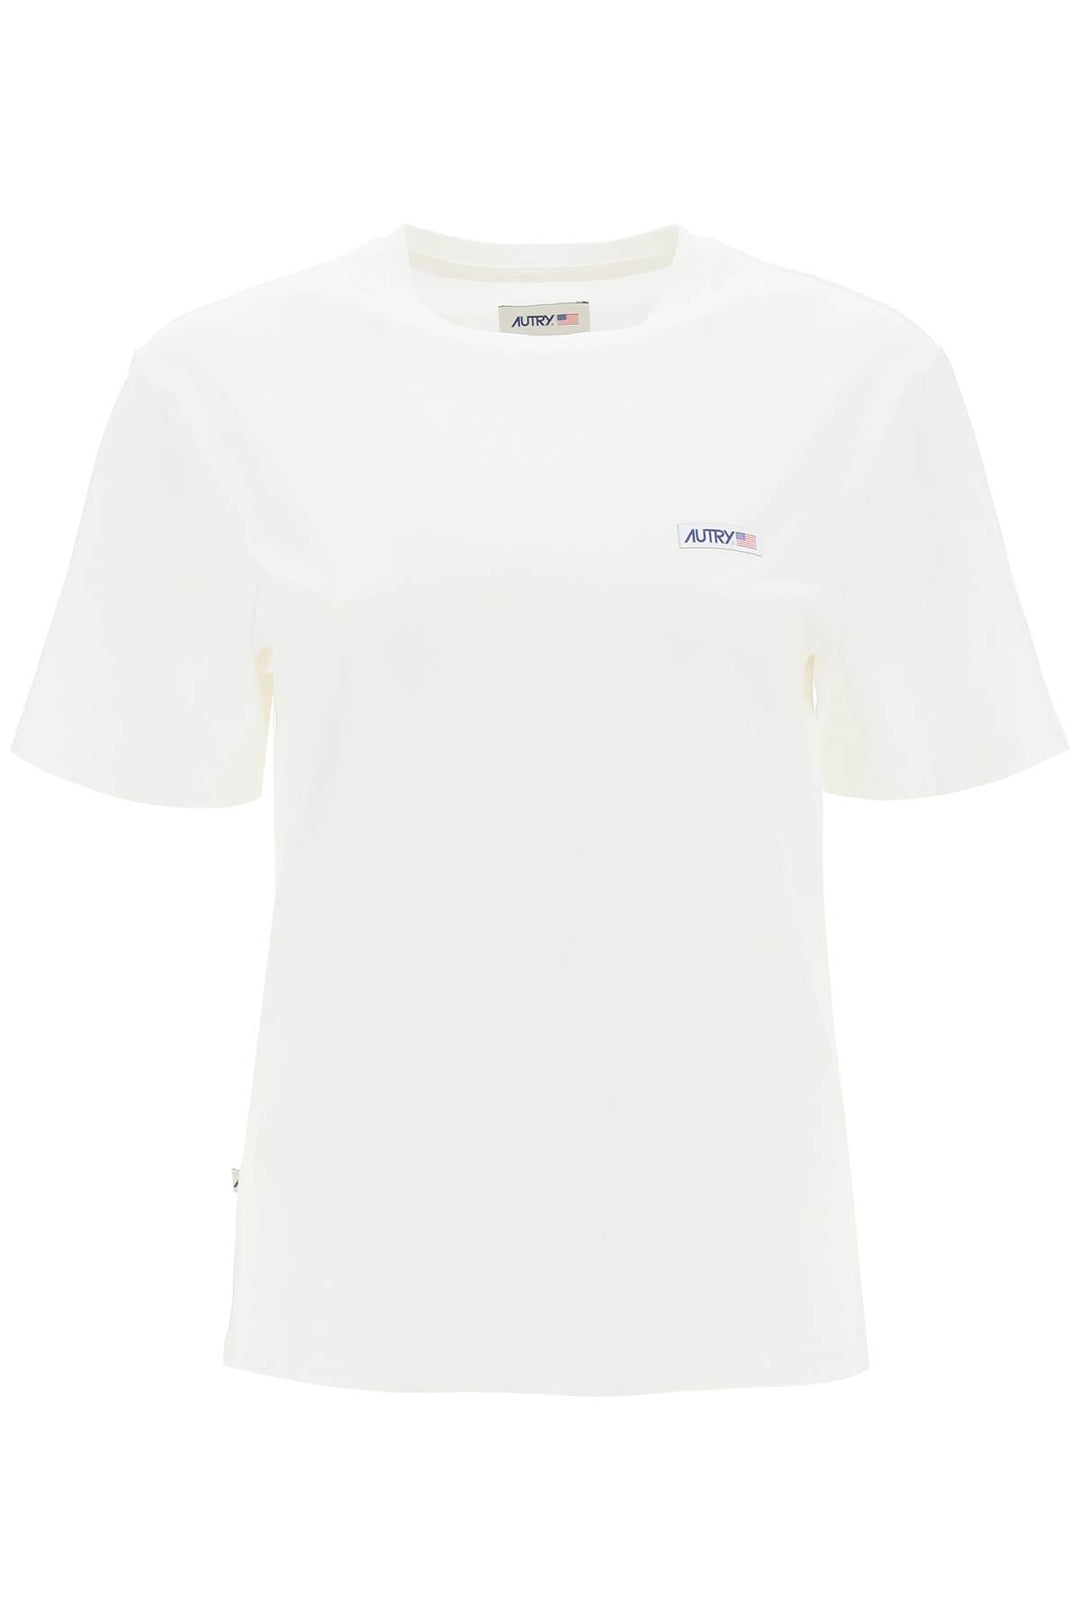 Autry Icon T Shirt   White